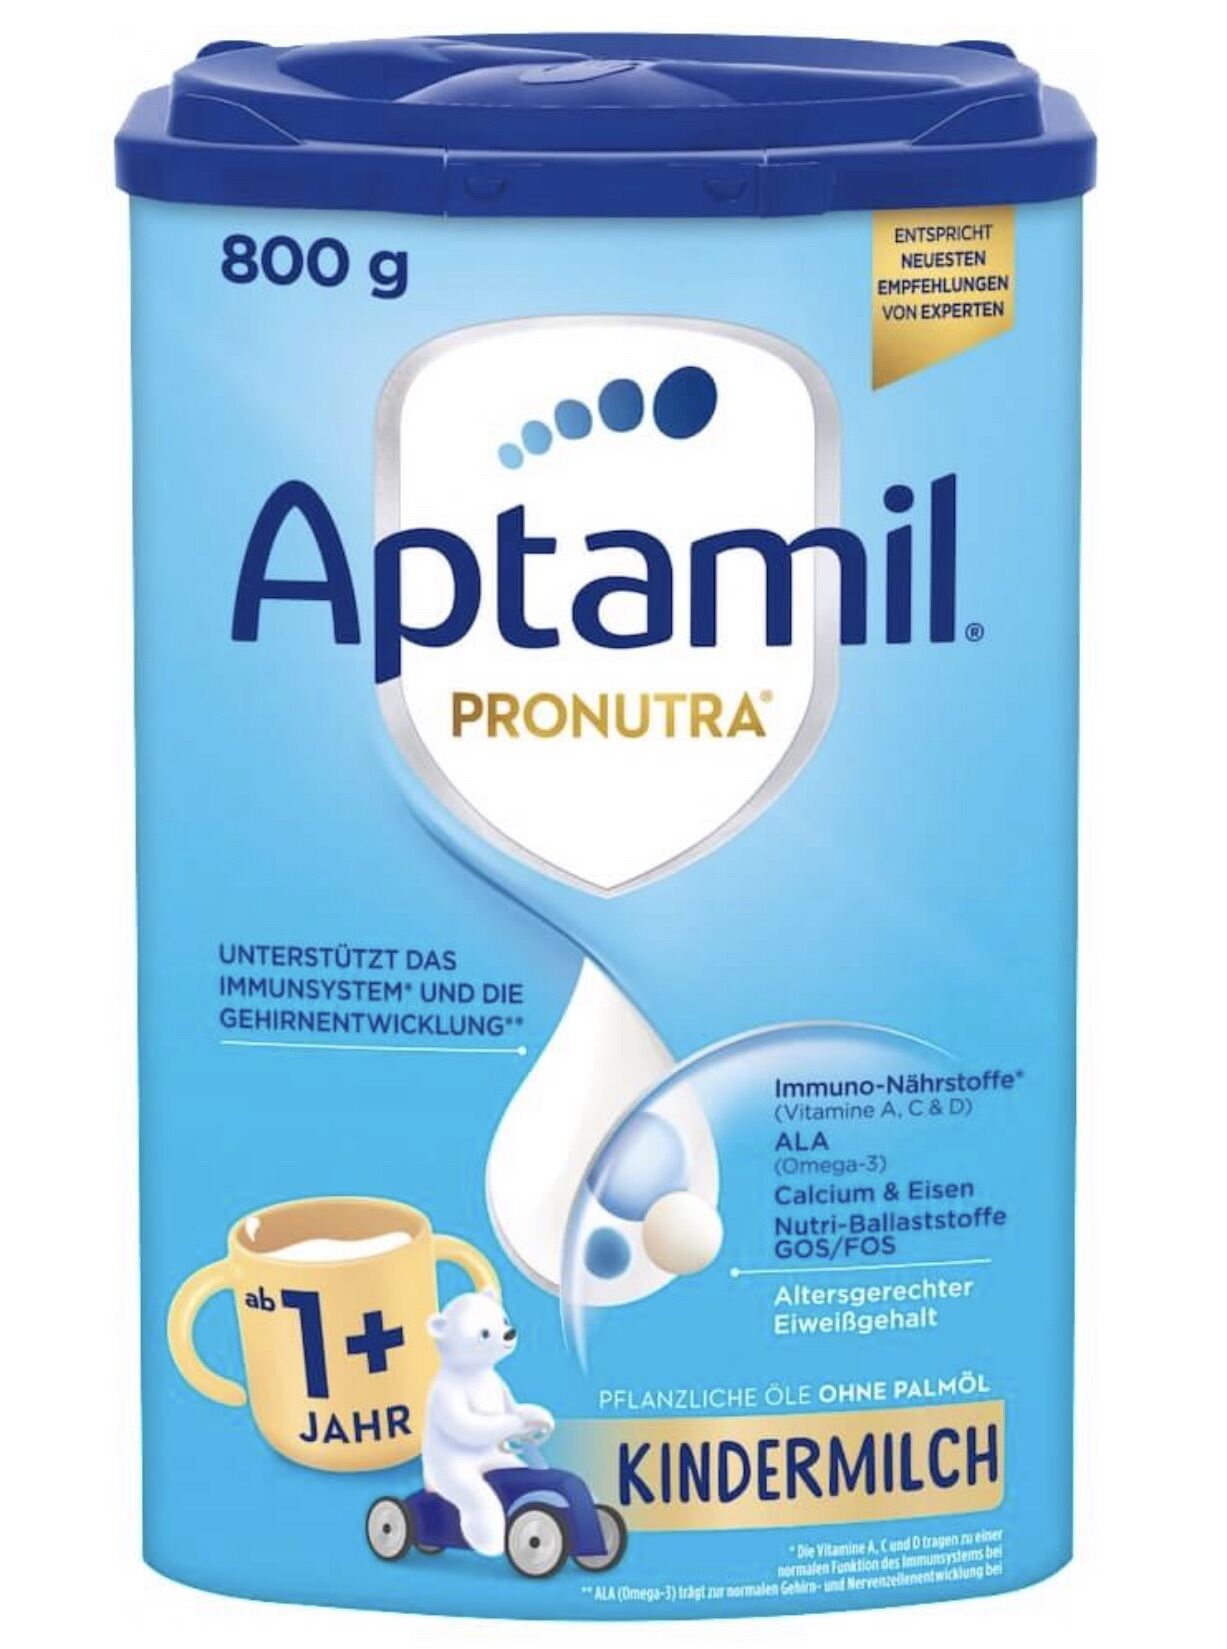 Sữa Aptamil Kendermilch 1+ cho trẻ từ 1-2 tuổi hàng nội địa Đức